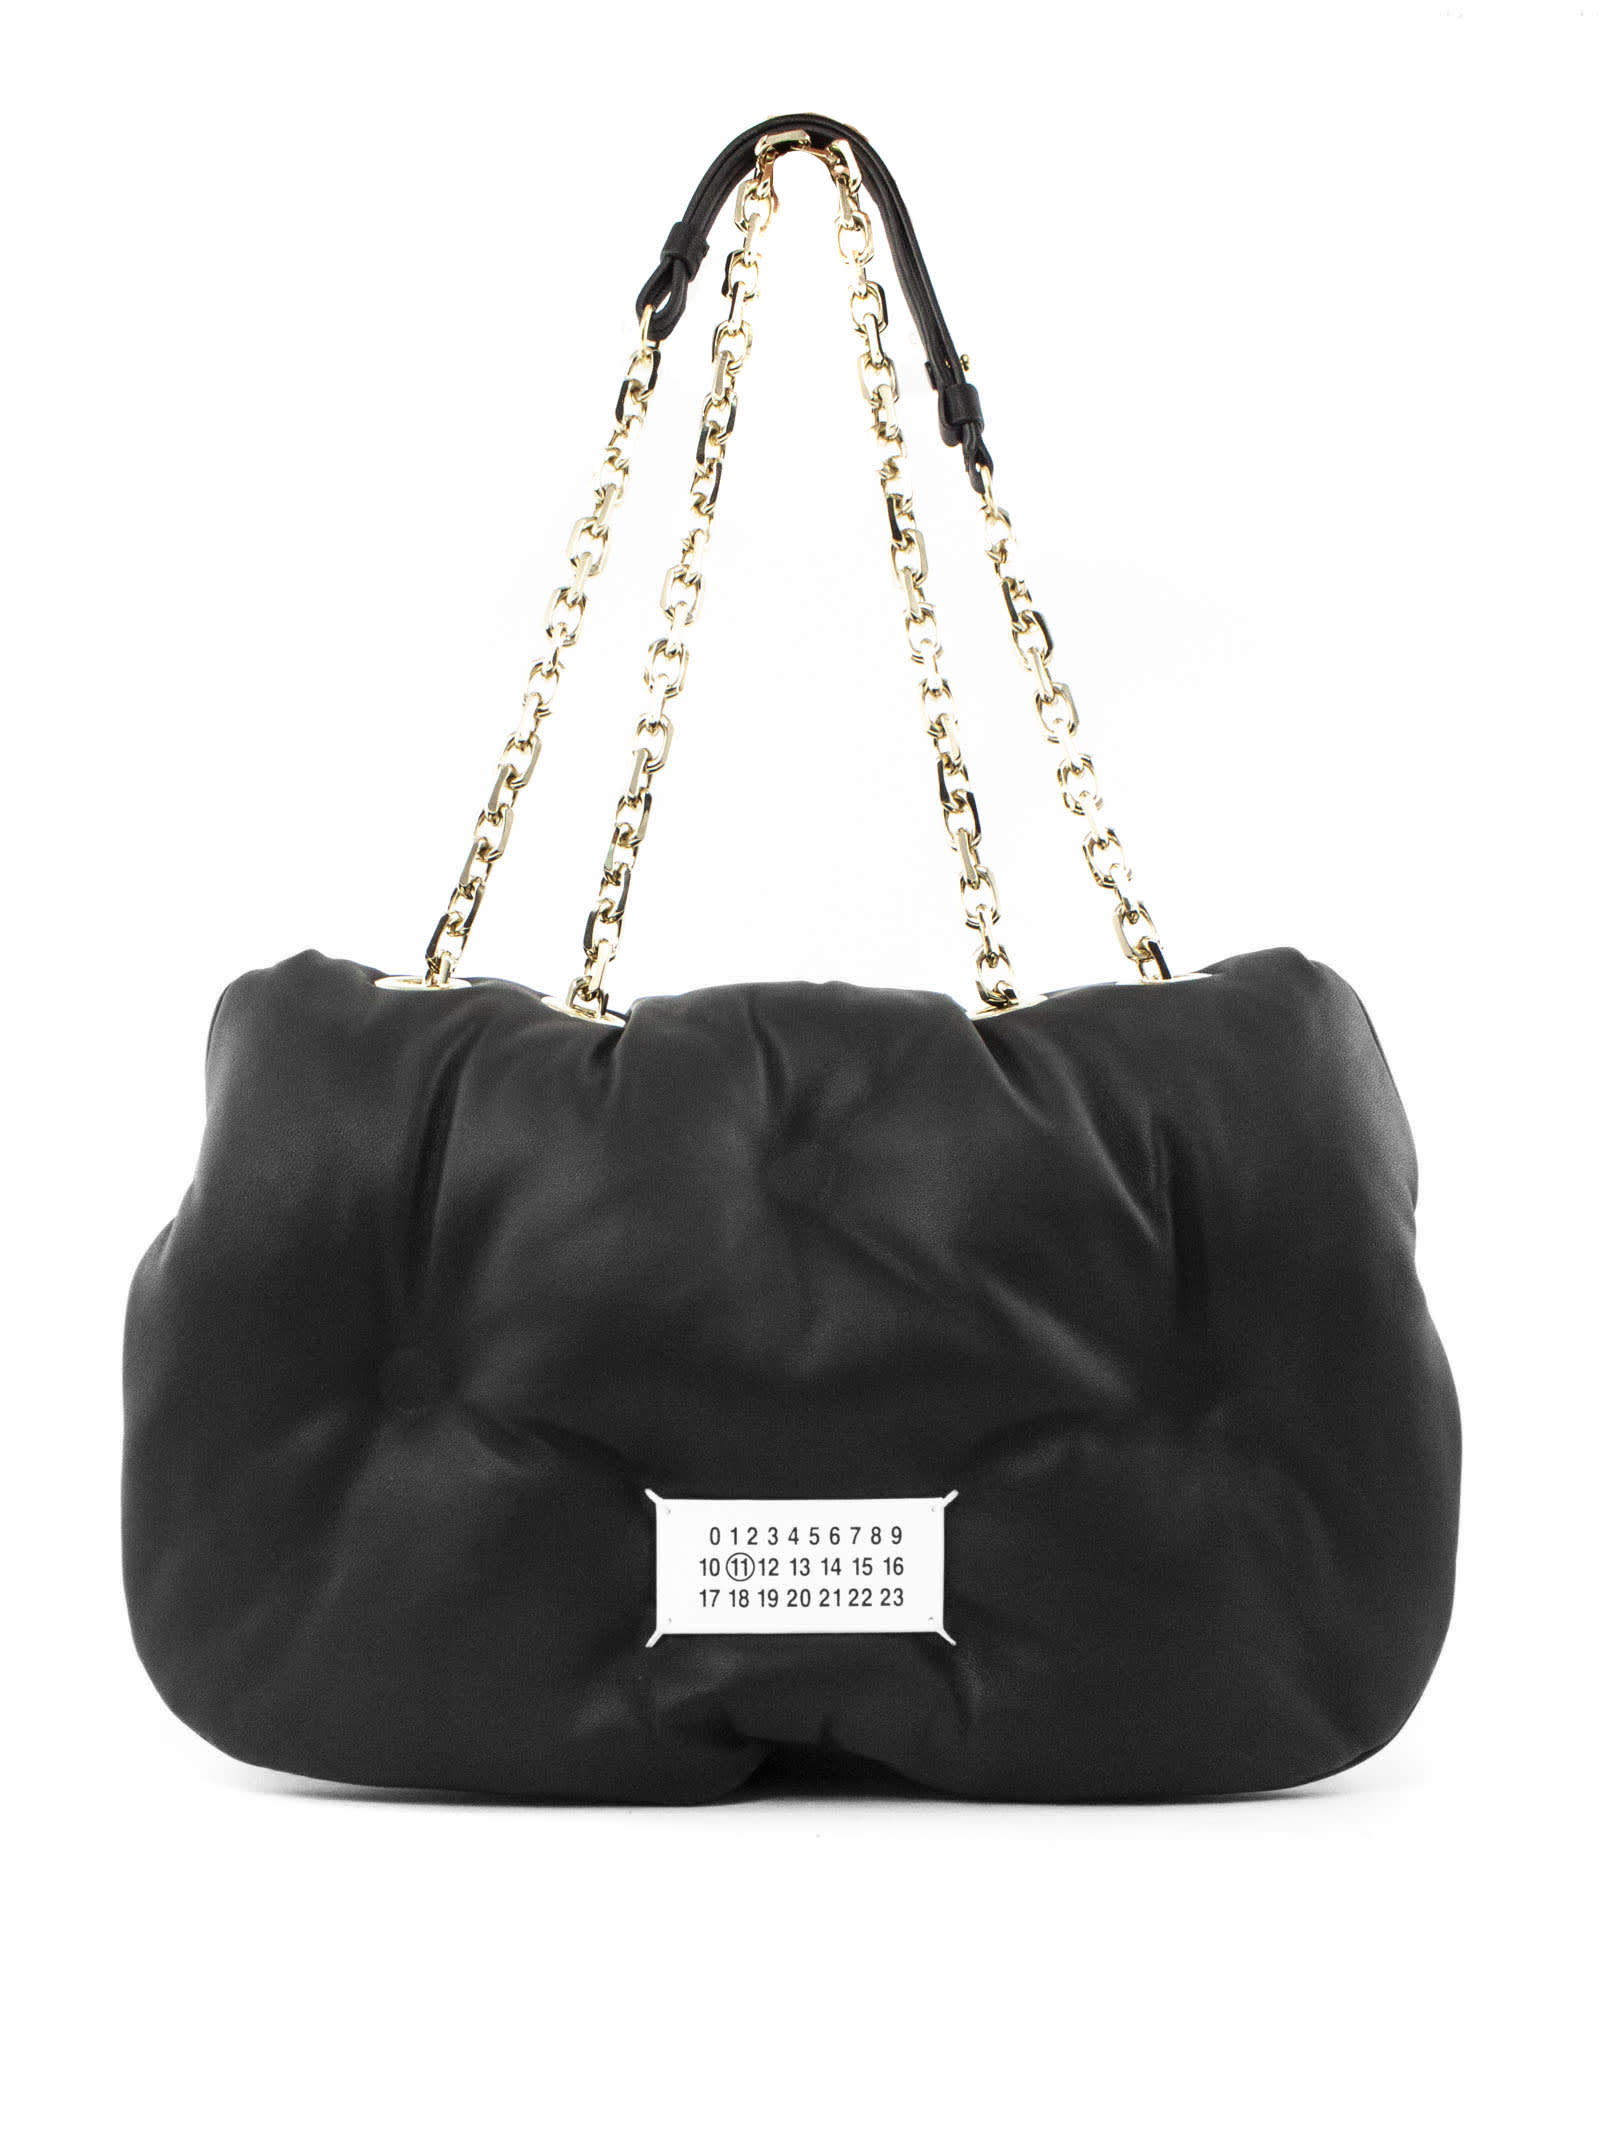 Maison Margiela Black Leather Glam Slam Shoulder Bag